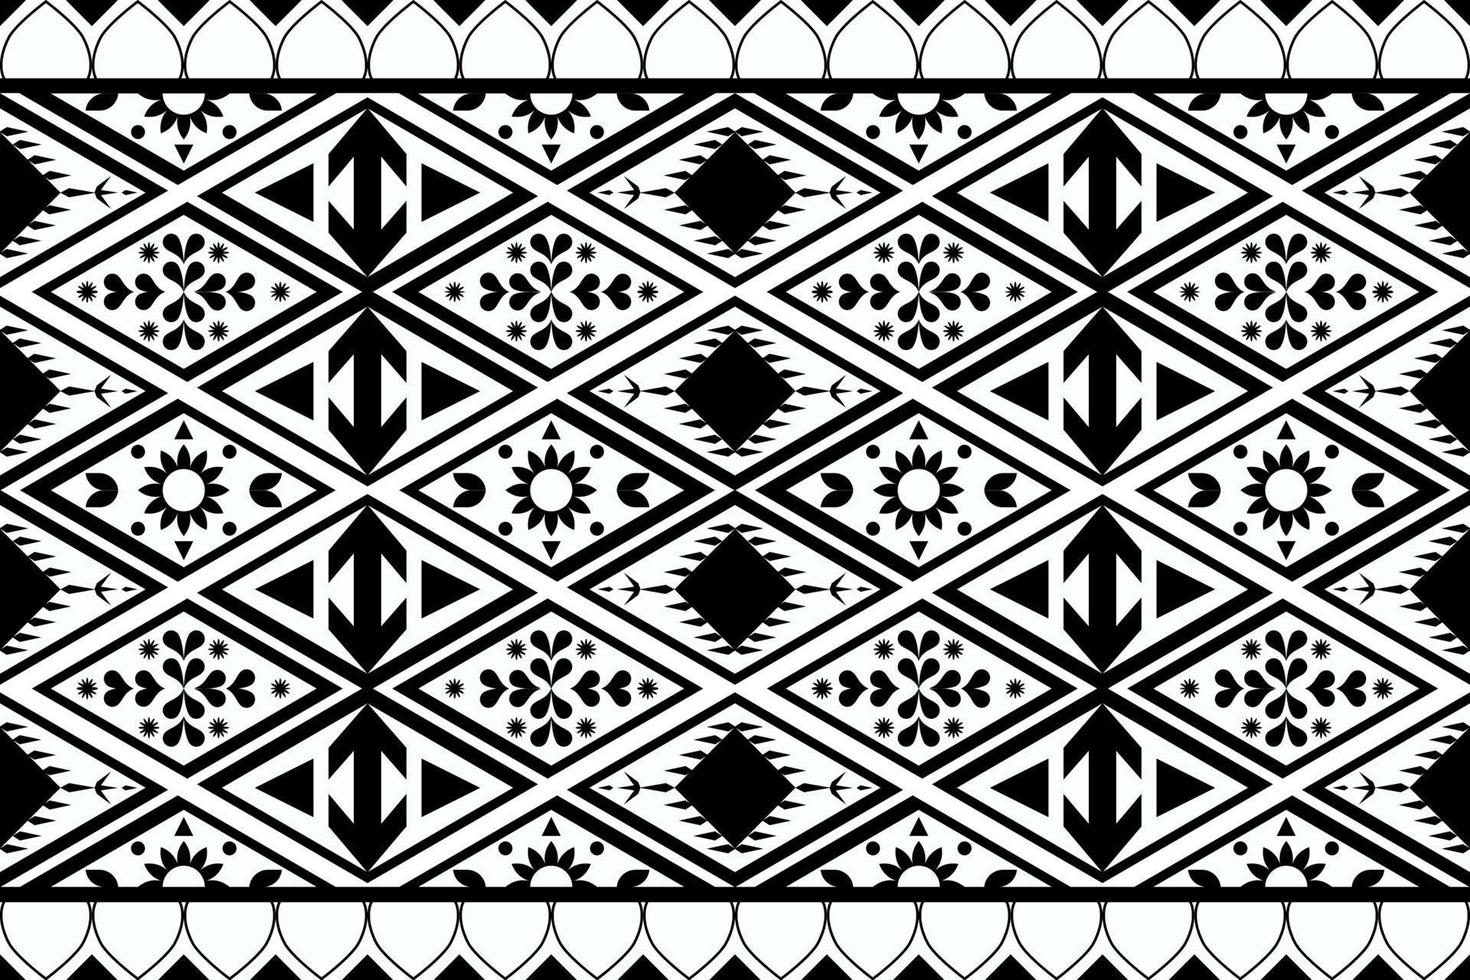 patrón étnico geométrico en blanco y negro diseñado para fondo, papel tapiz, ropa tradicional, alfombra, cortina y decoración del hogar. vector